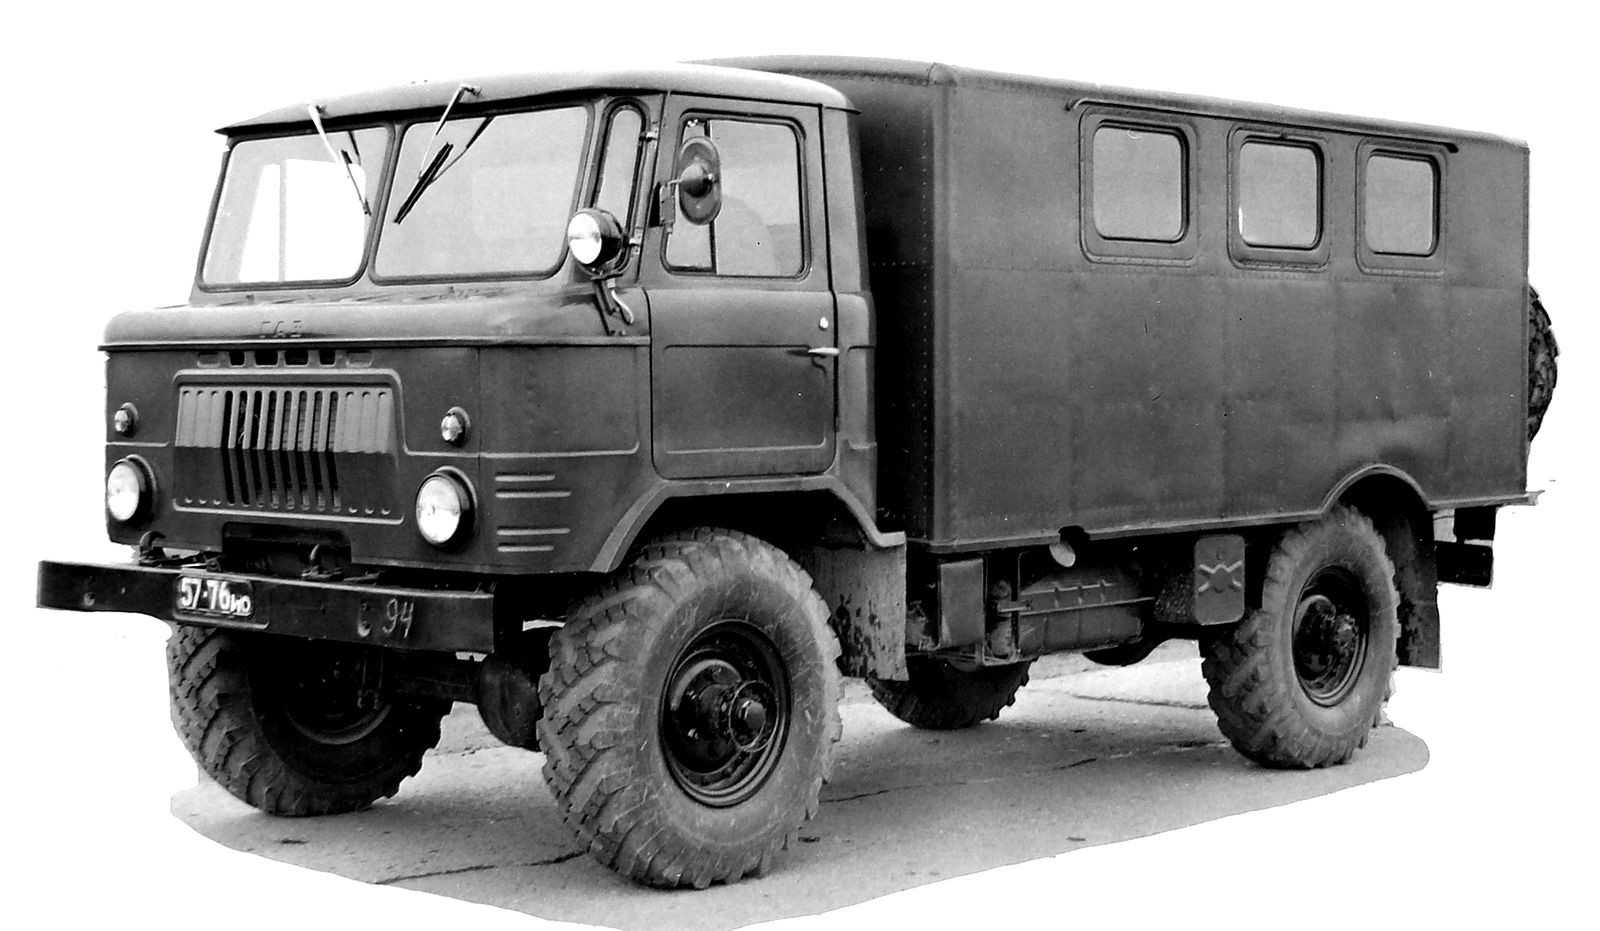 Автомобиль газ-66-11: устройство, техническое обслуживание и ремонт (а.м. бутусов) - 1988 год